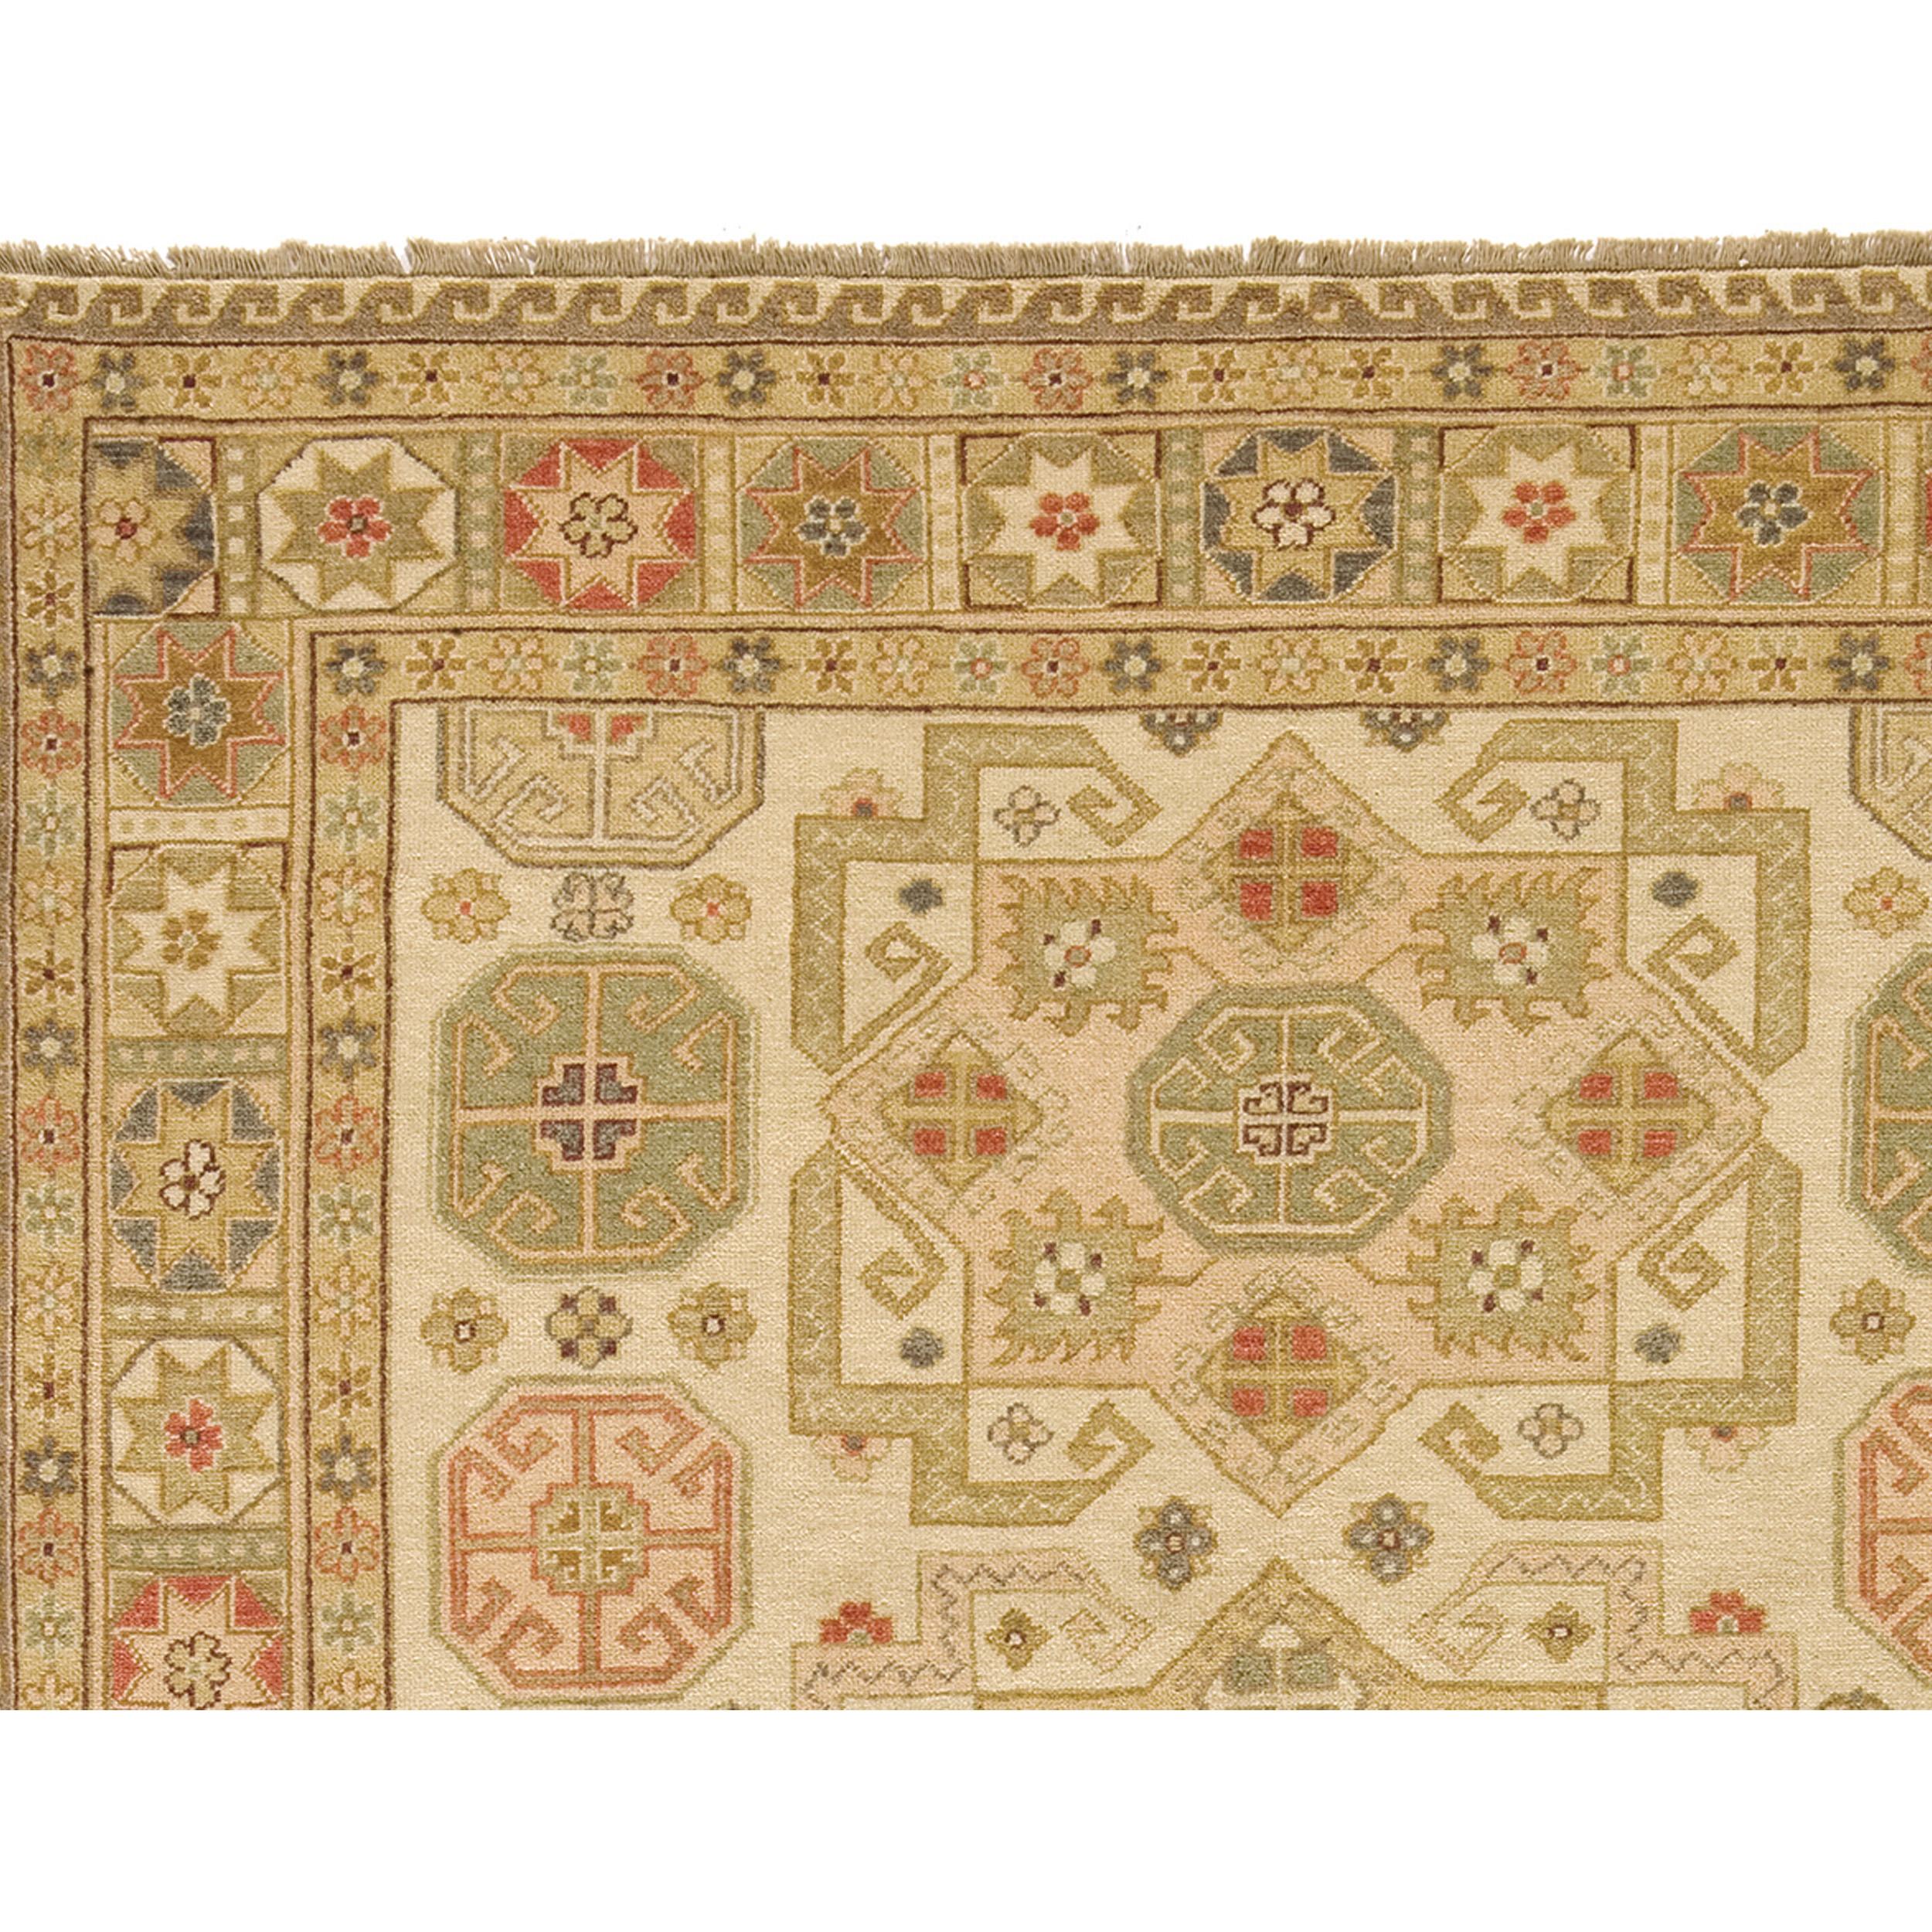 Ein luxuriöser, traditioneller, handgeknüpfter Teppich aus feinster Wolle, der in sorgfältiger Handarbeit hergestellt wurde. Dieser Teppich ist mehr als ein Gebrauchsgegenstand, er ist ein Kunstwerk, das die Sinne erfreut und perfekt mit einer